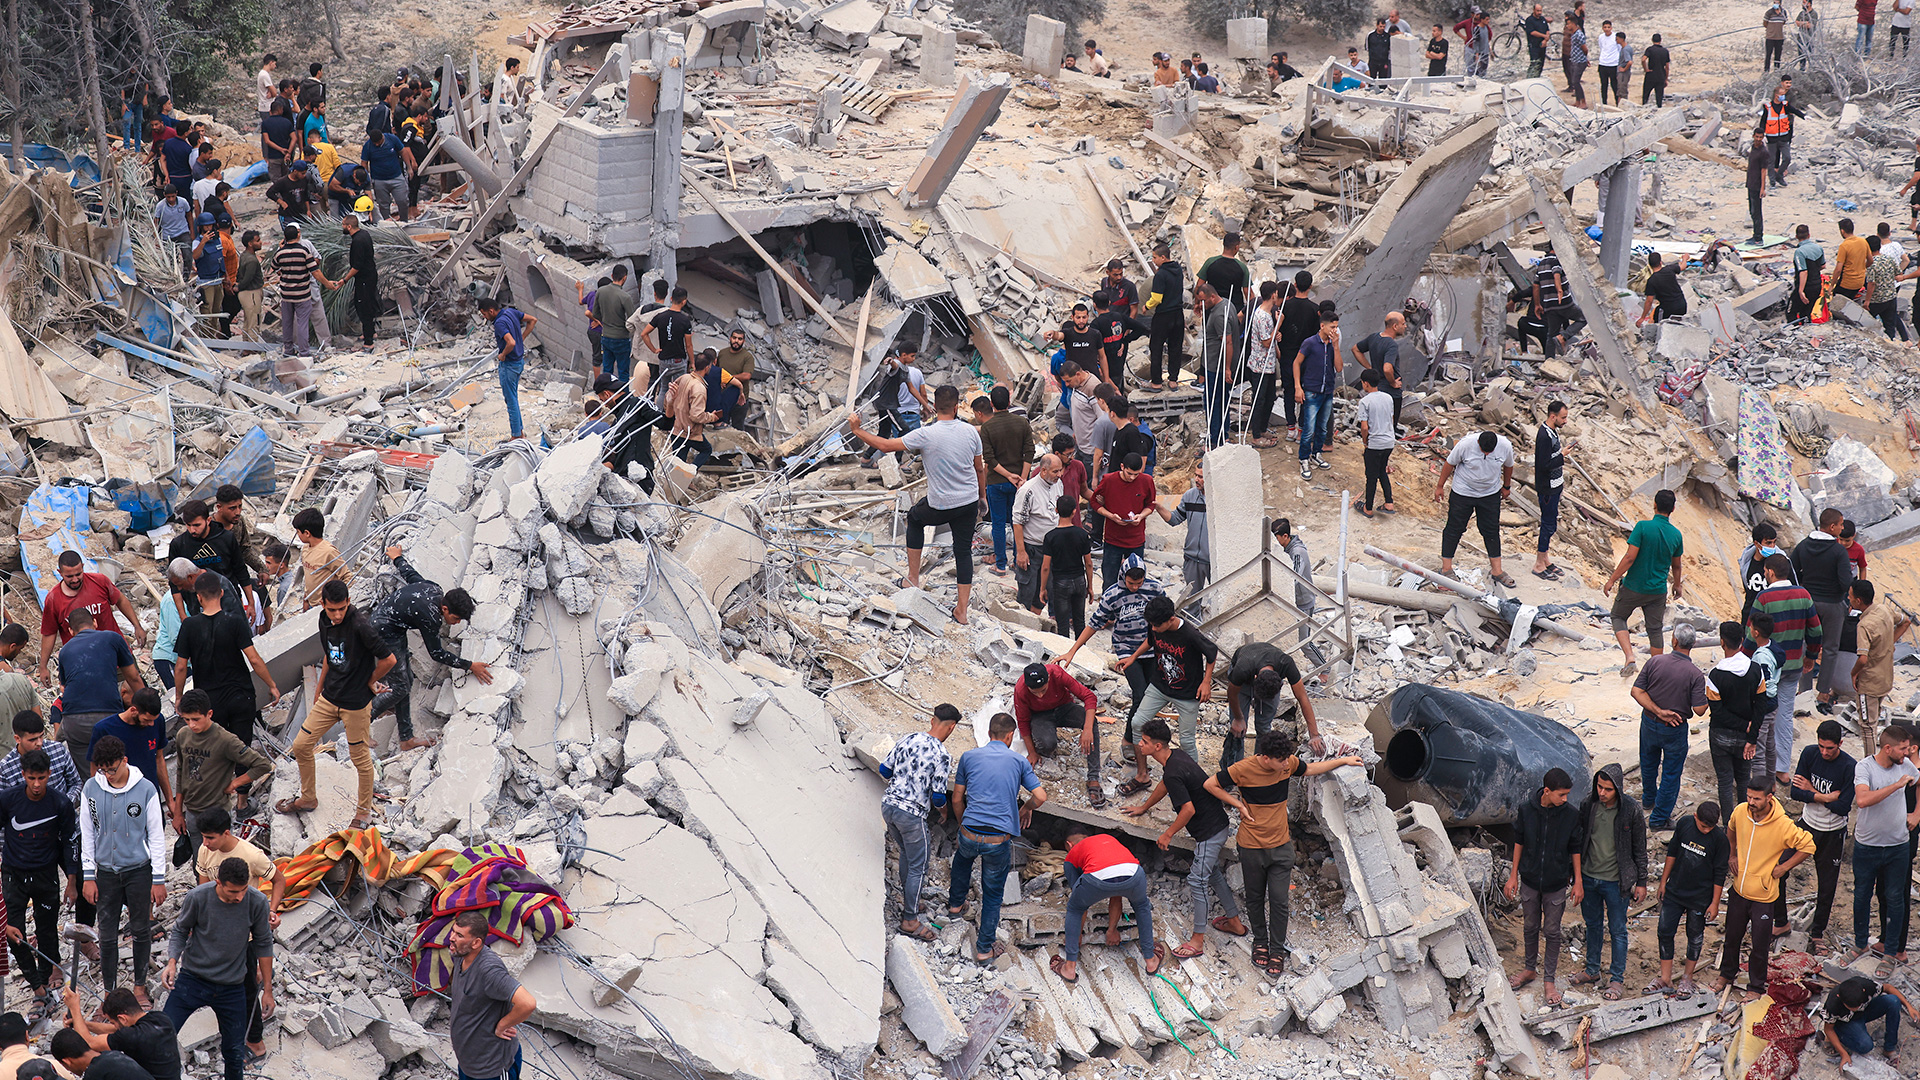 Israel bombardeó Gaza e incrementó los ataques cerca del gran hospital